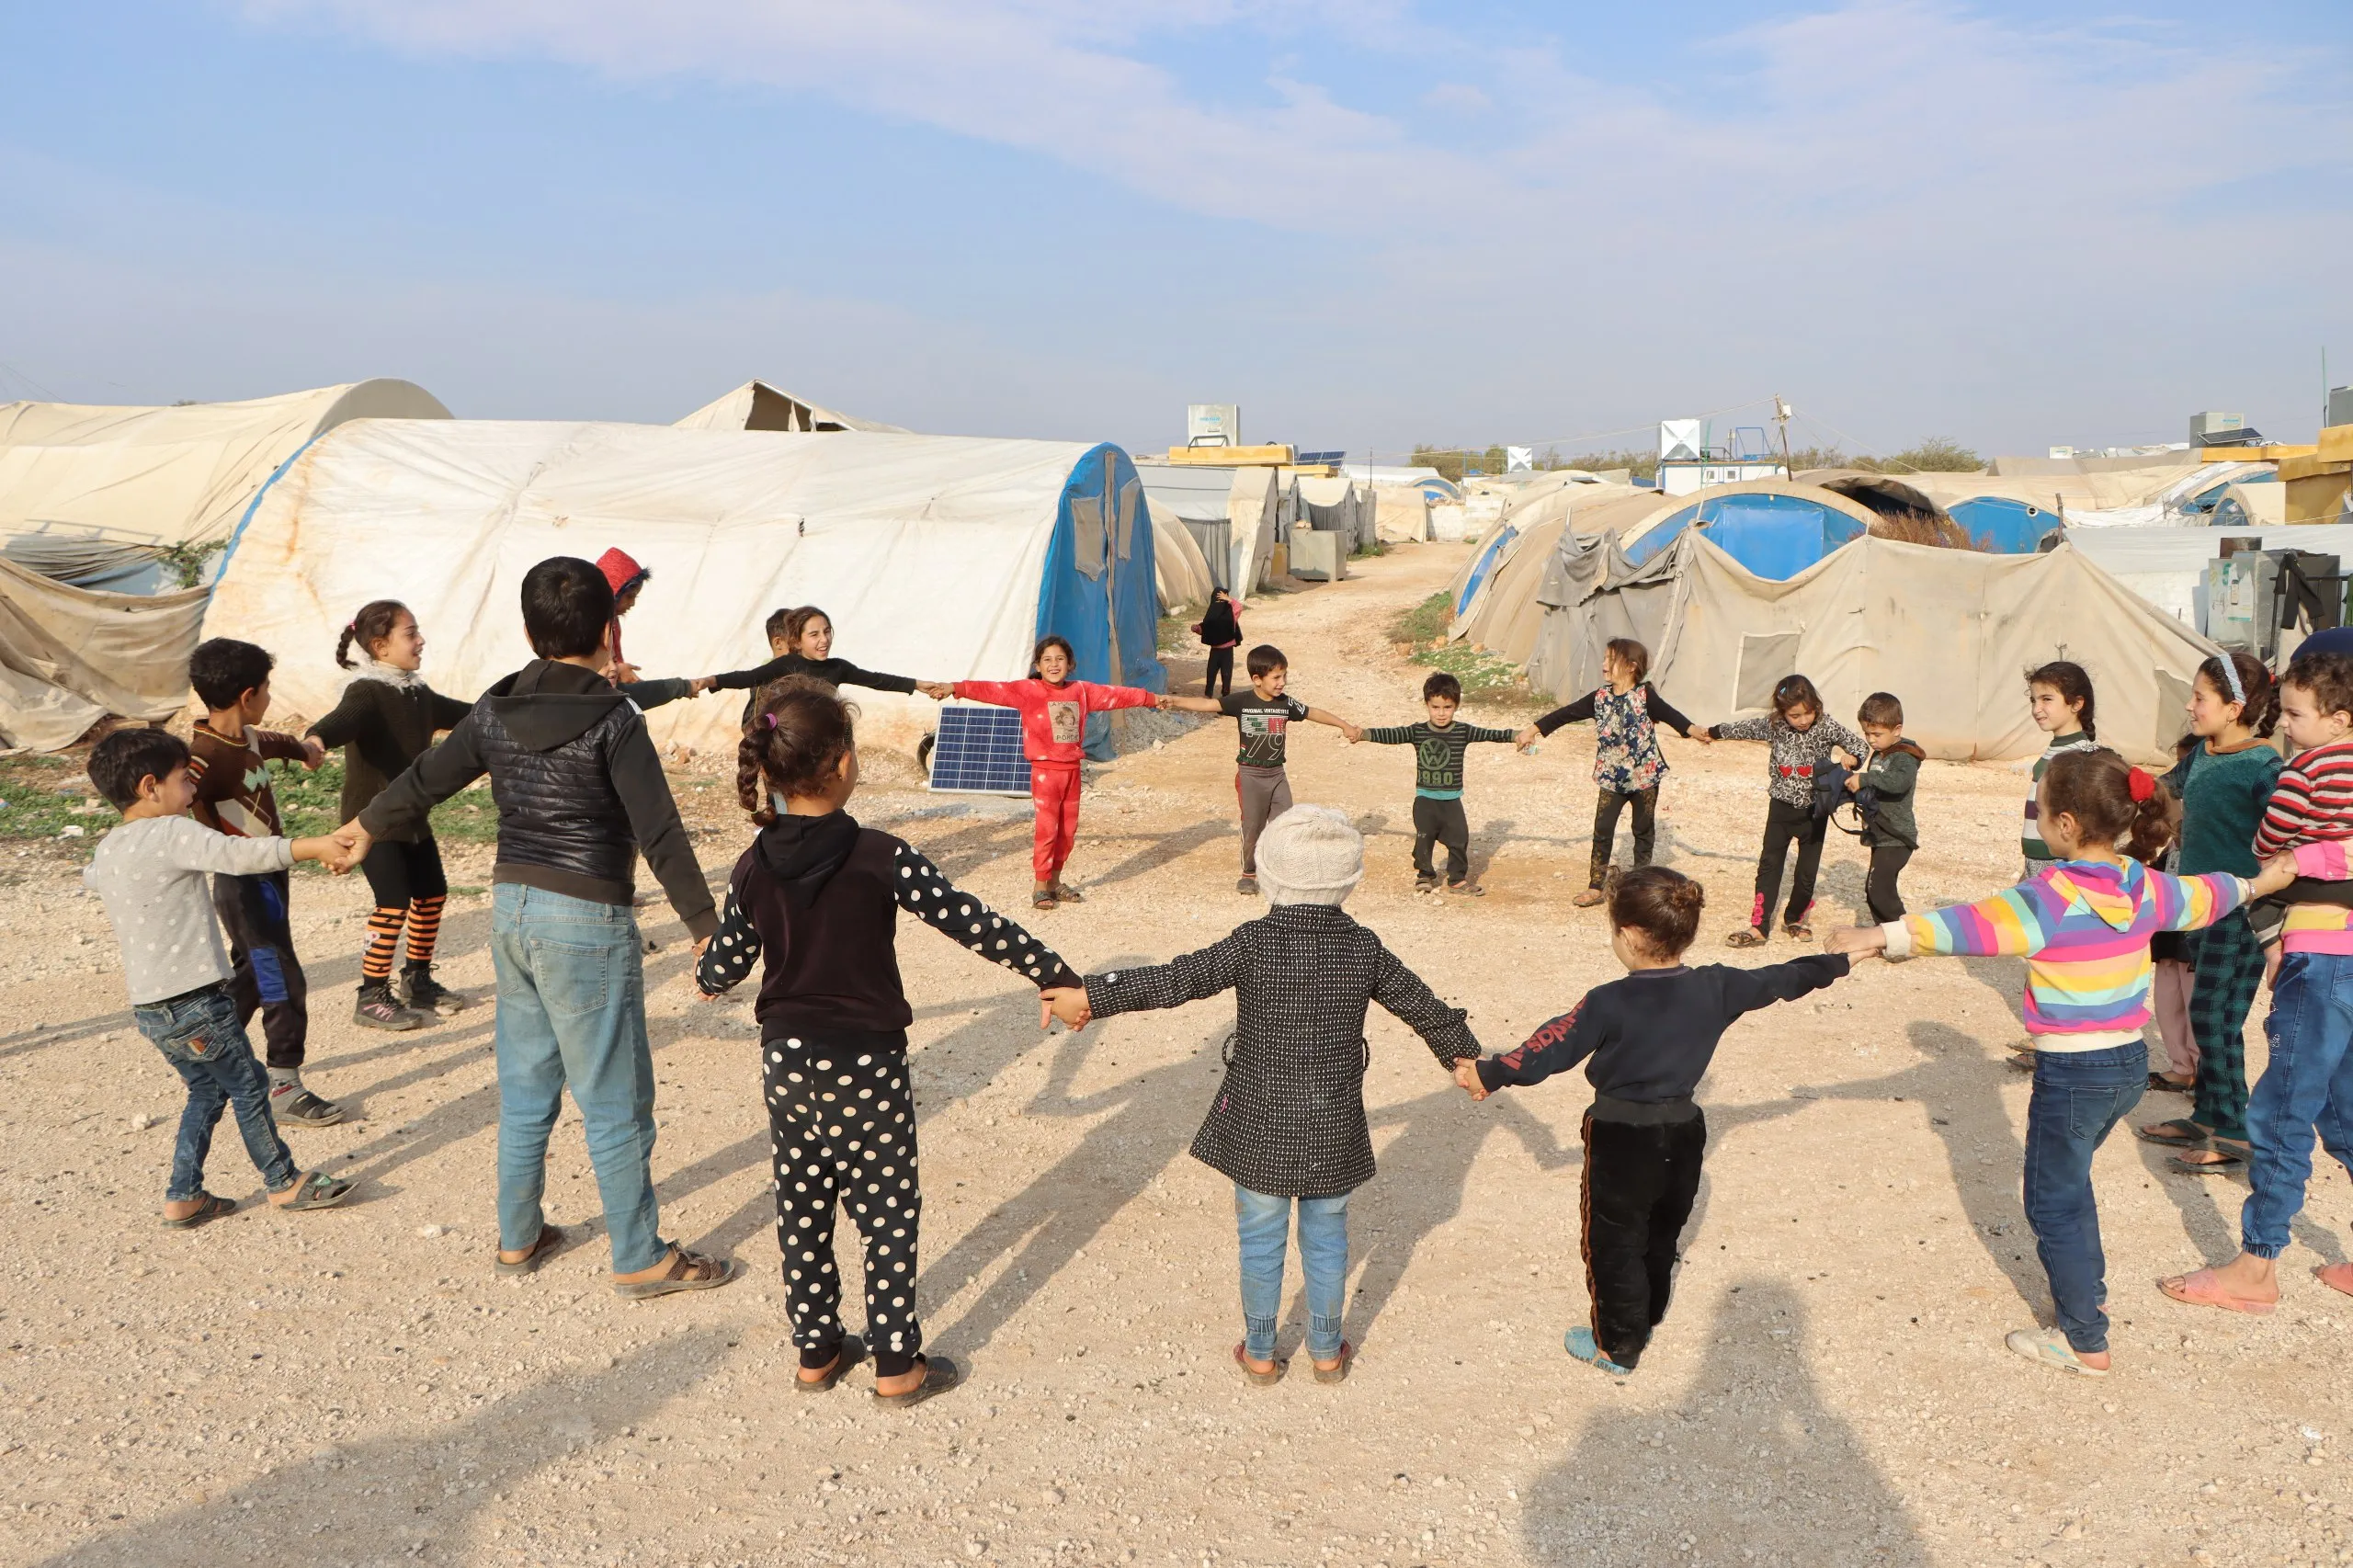 "الائتلاف" يدعو لمساعدة مخيمات النازحين واللاجئين شمال سوريا لتجنب أي كارثة إنسانية